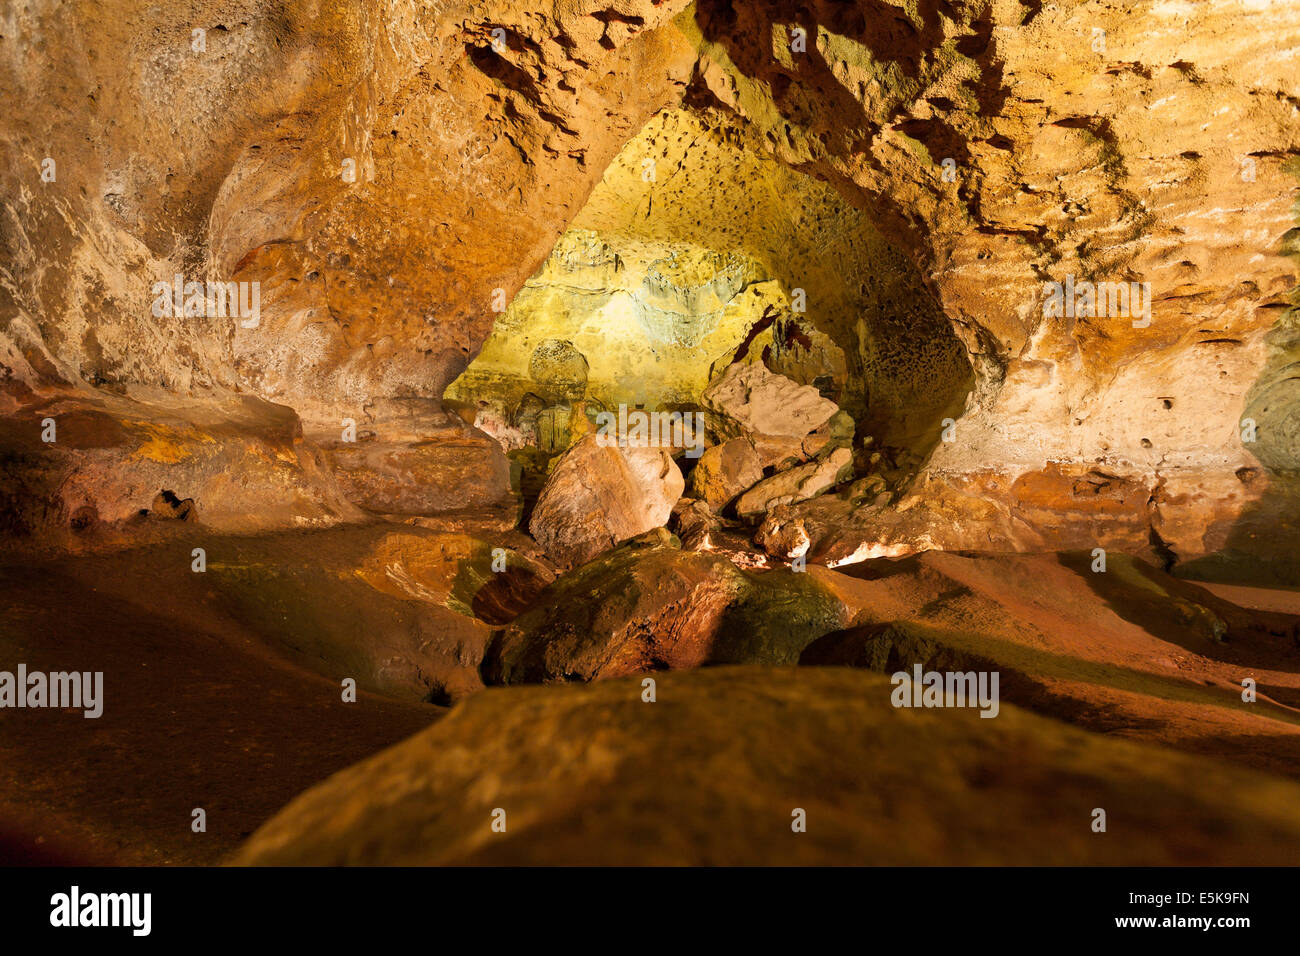 Le grotte di Loltun: dalle tenebre alla luce. Luci elettriche illuminare le fantastiche formazioni. Un giallo brillante grotta è al di là di Foto Stock